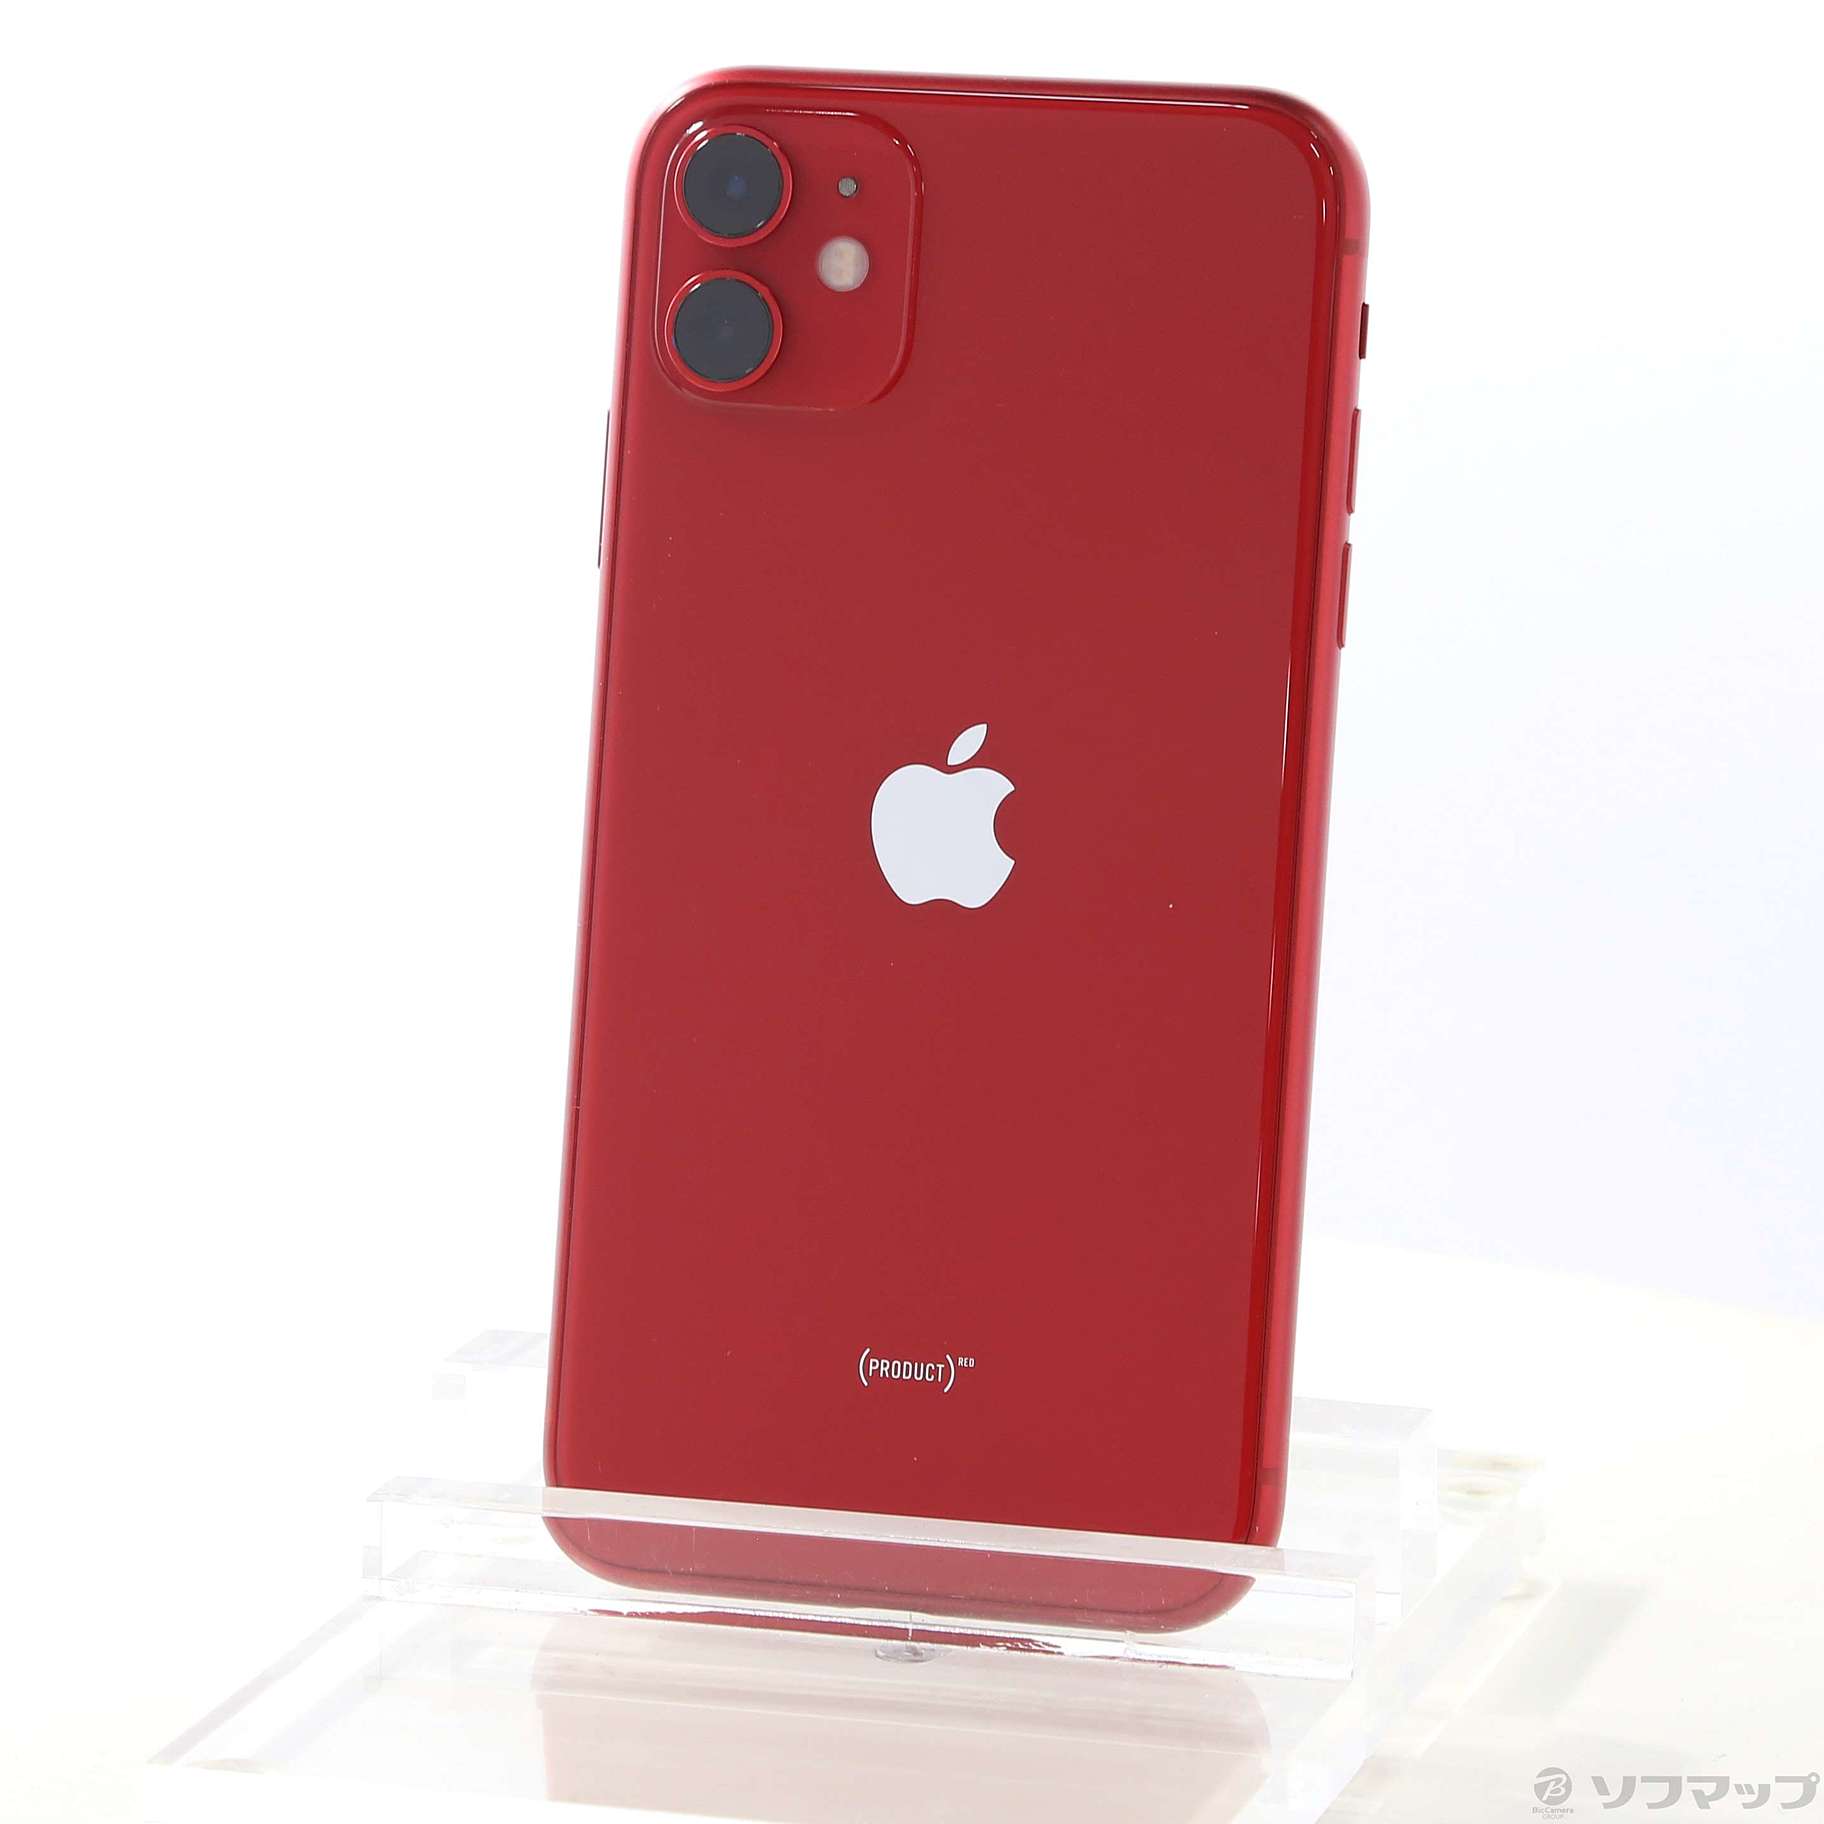 iPhone11 128GB PRODUCT RED SIMフリー 国内外の人気が集結 - 携帯電話本体